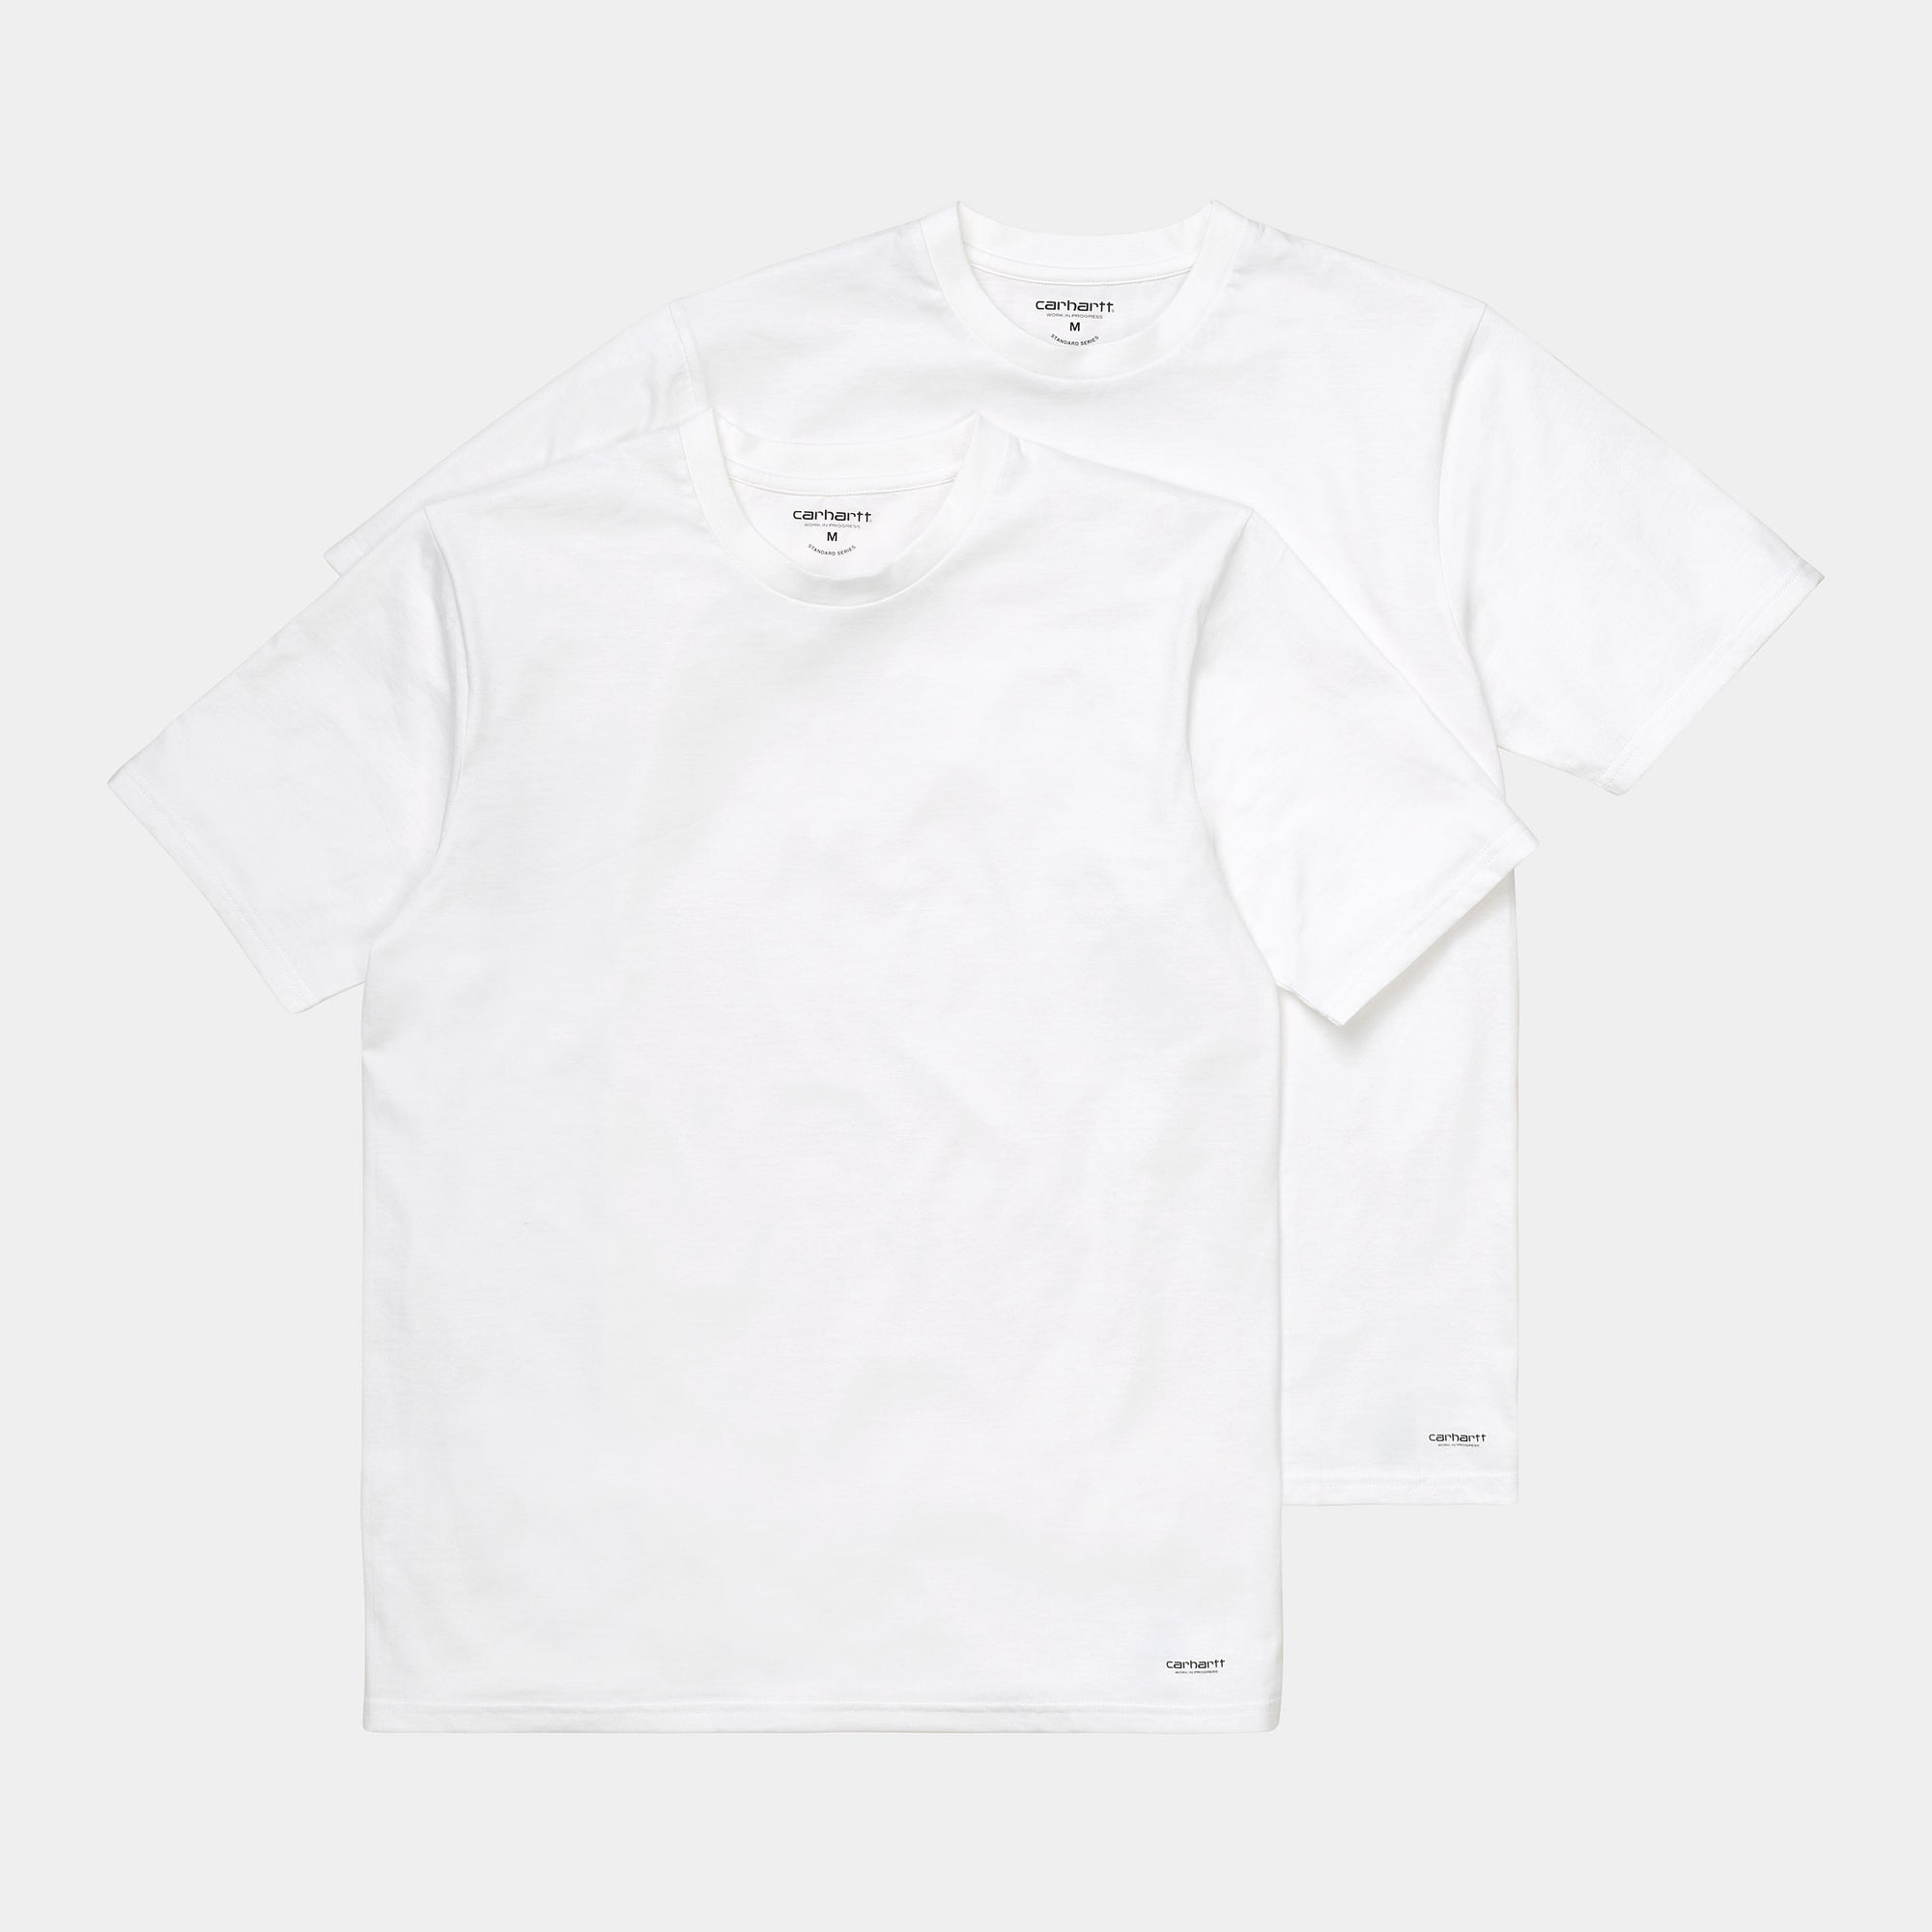 Carhatt WIP Standard Crew T-Shirt - White